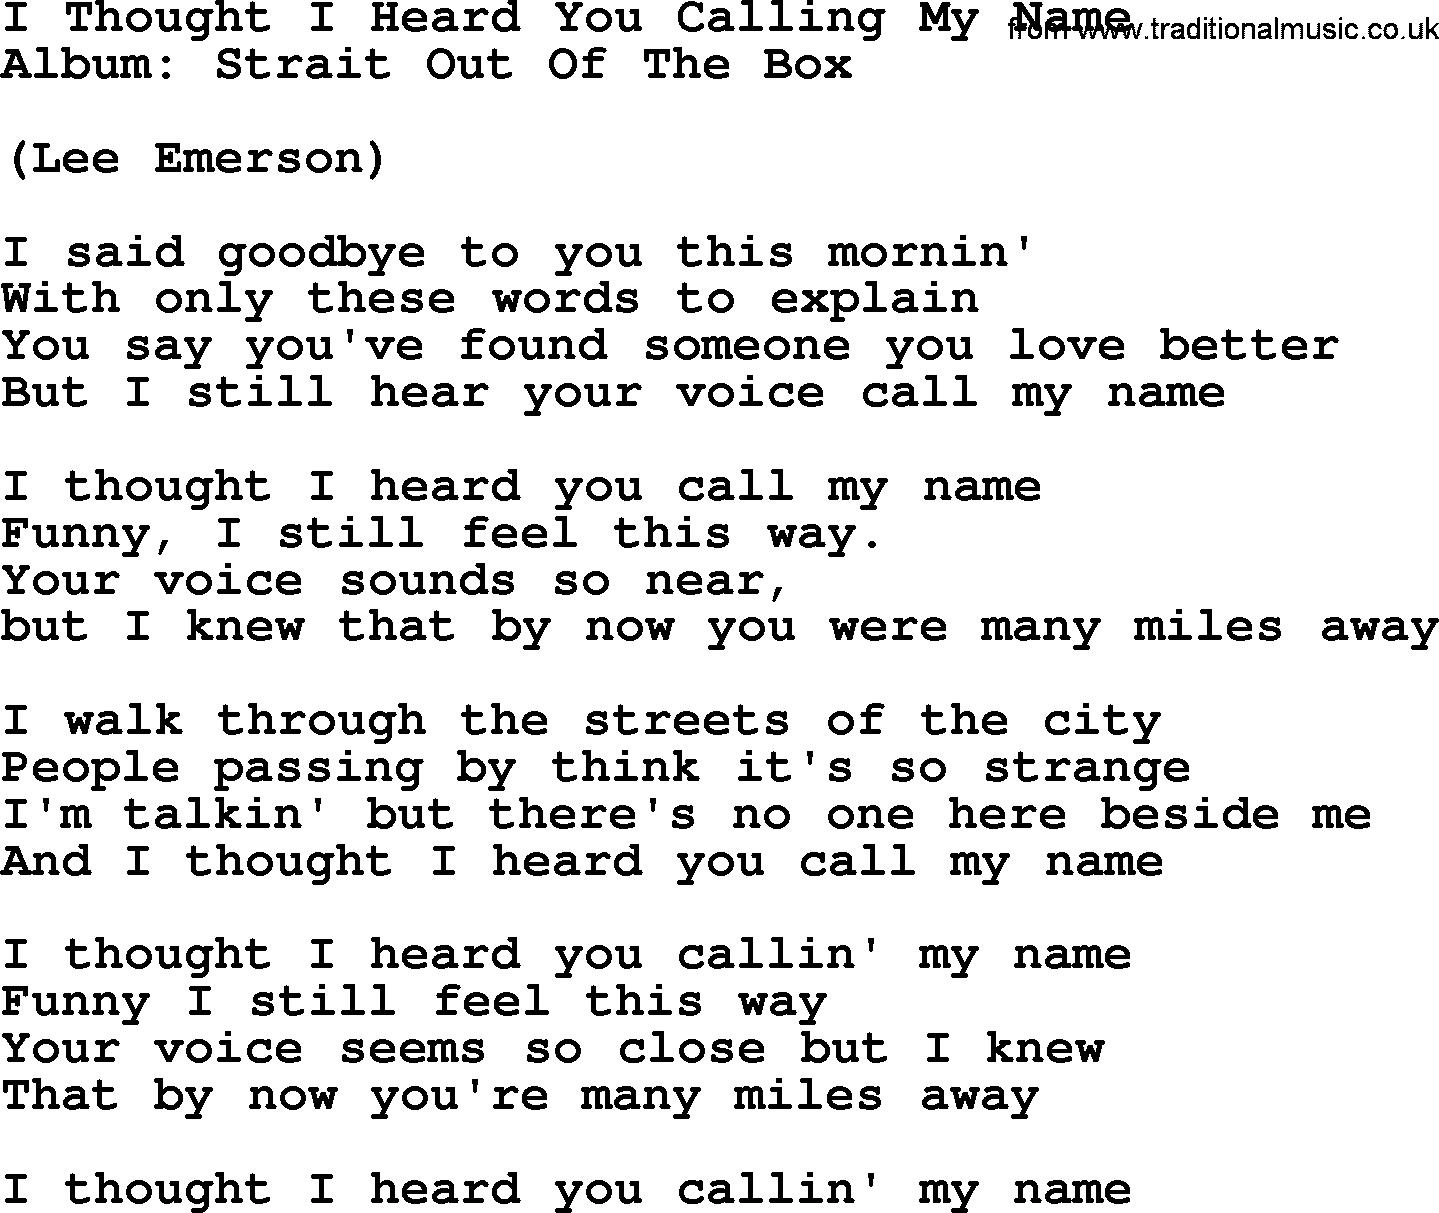 George Strait song: I Thought I Heard You Calling My Name, lyrics